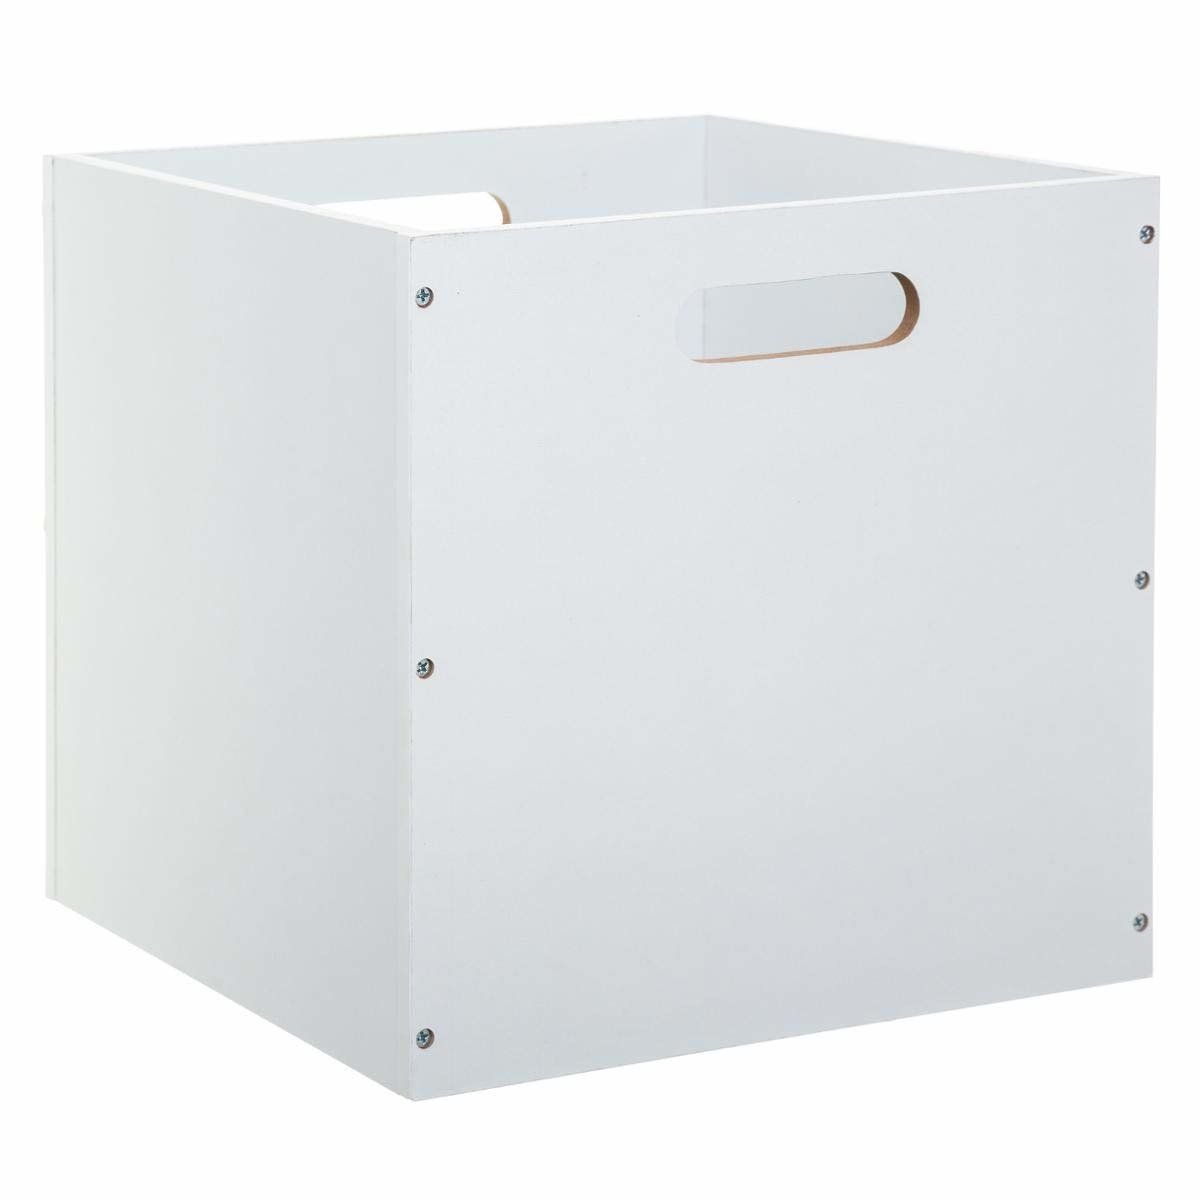 5five Simply Smart Dřevěná skladovací krabice v bílé barvě, 31 x 31 cm - EMAKO.CZ s.r.o.